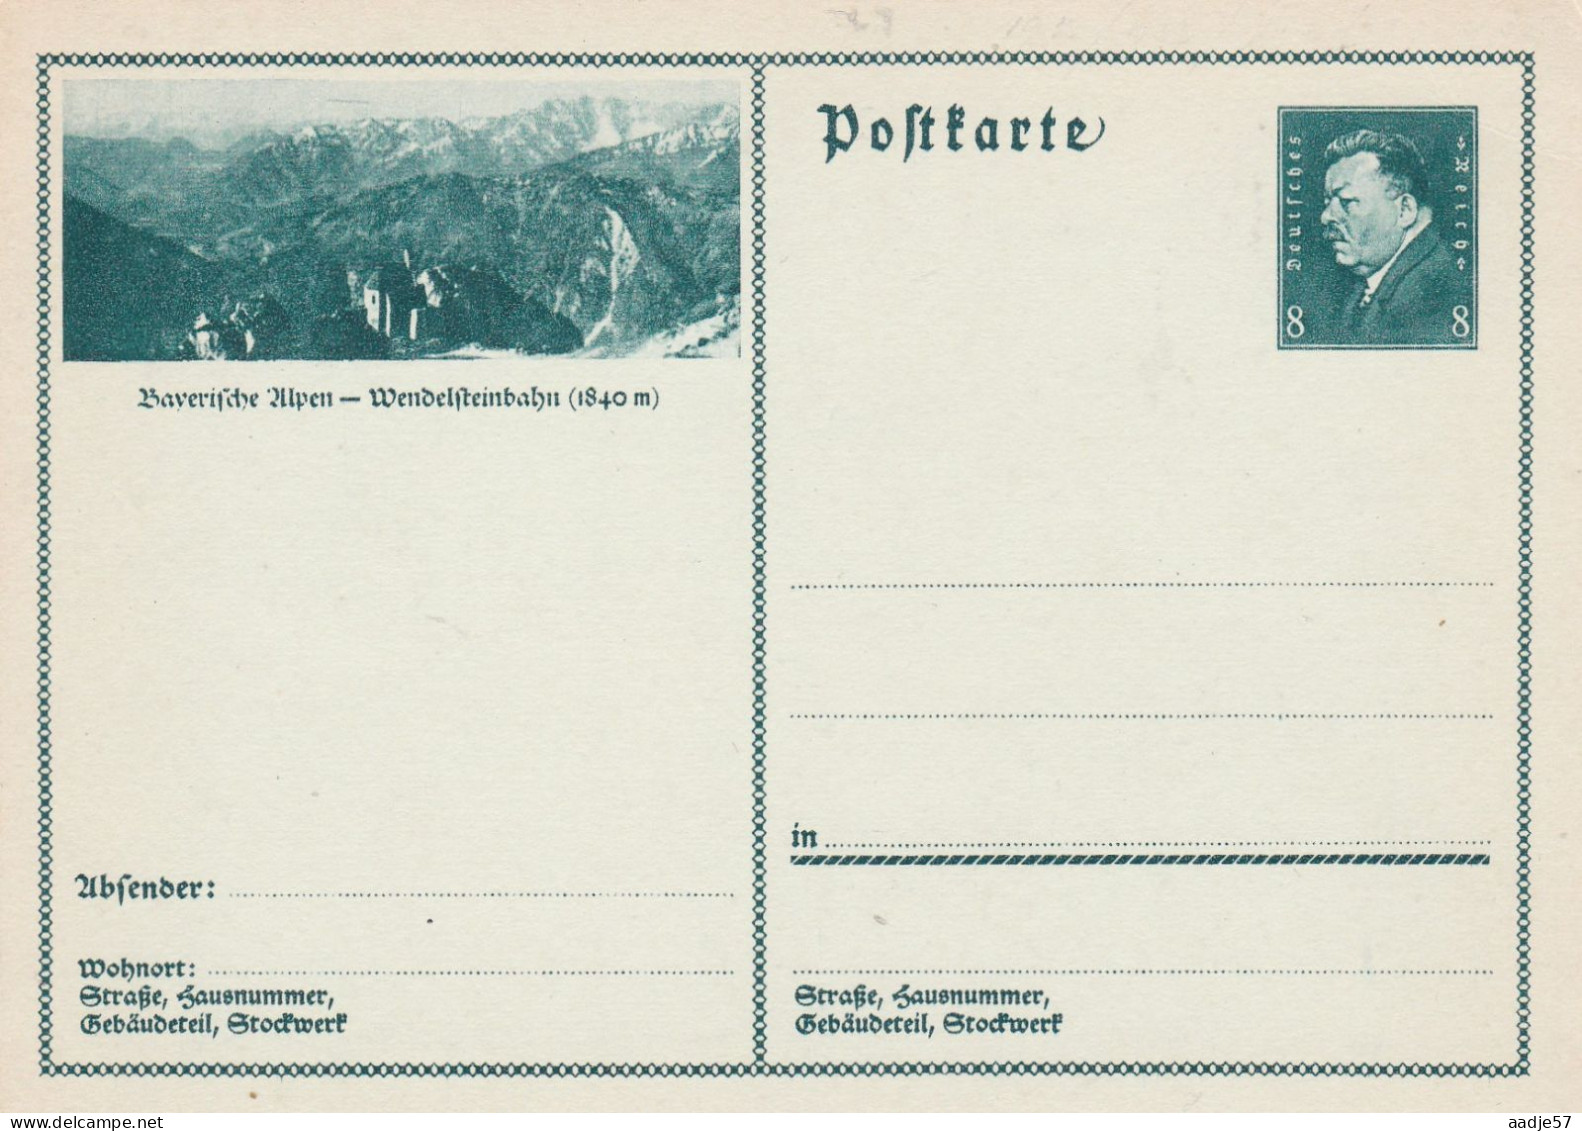 Besucht Baverische Alpen Wendelsteinbahn - Bildpostkarte 1931 -  Mint - Tarjetas